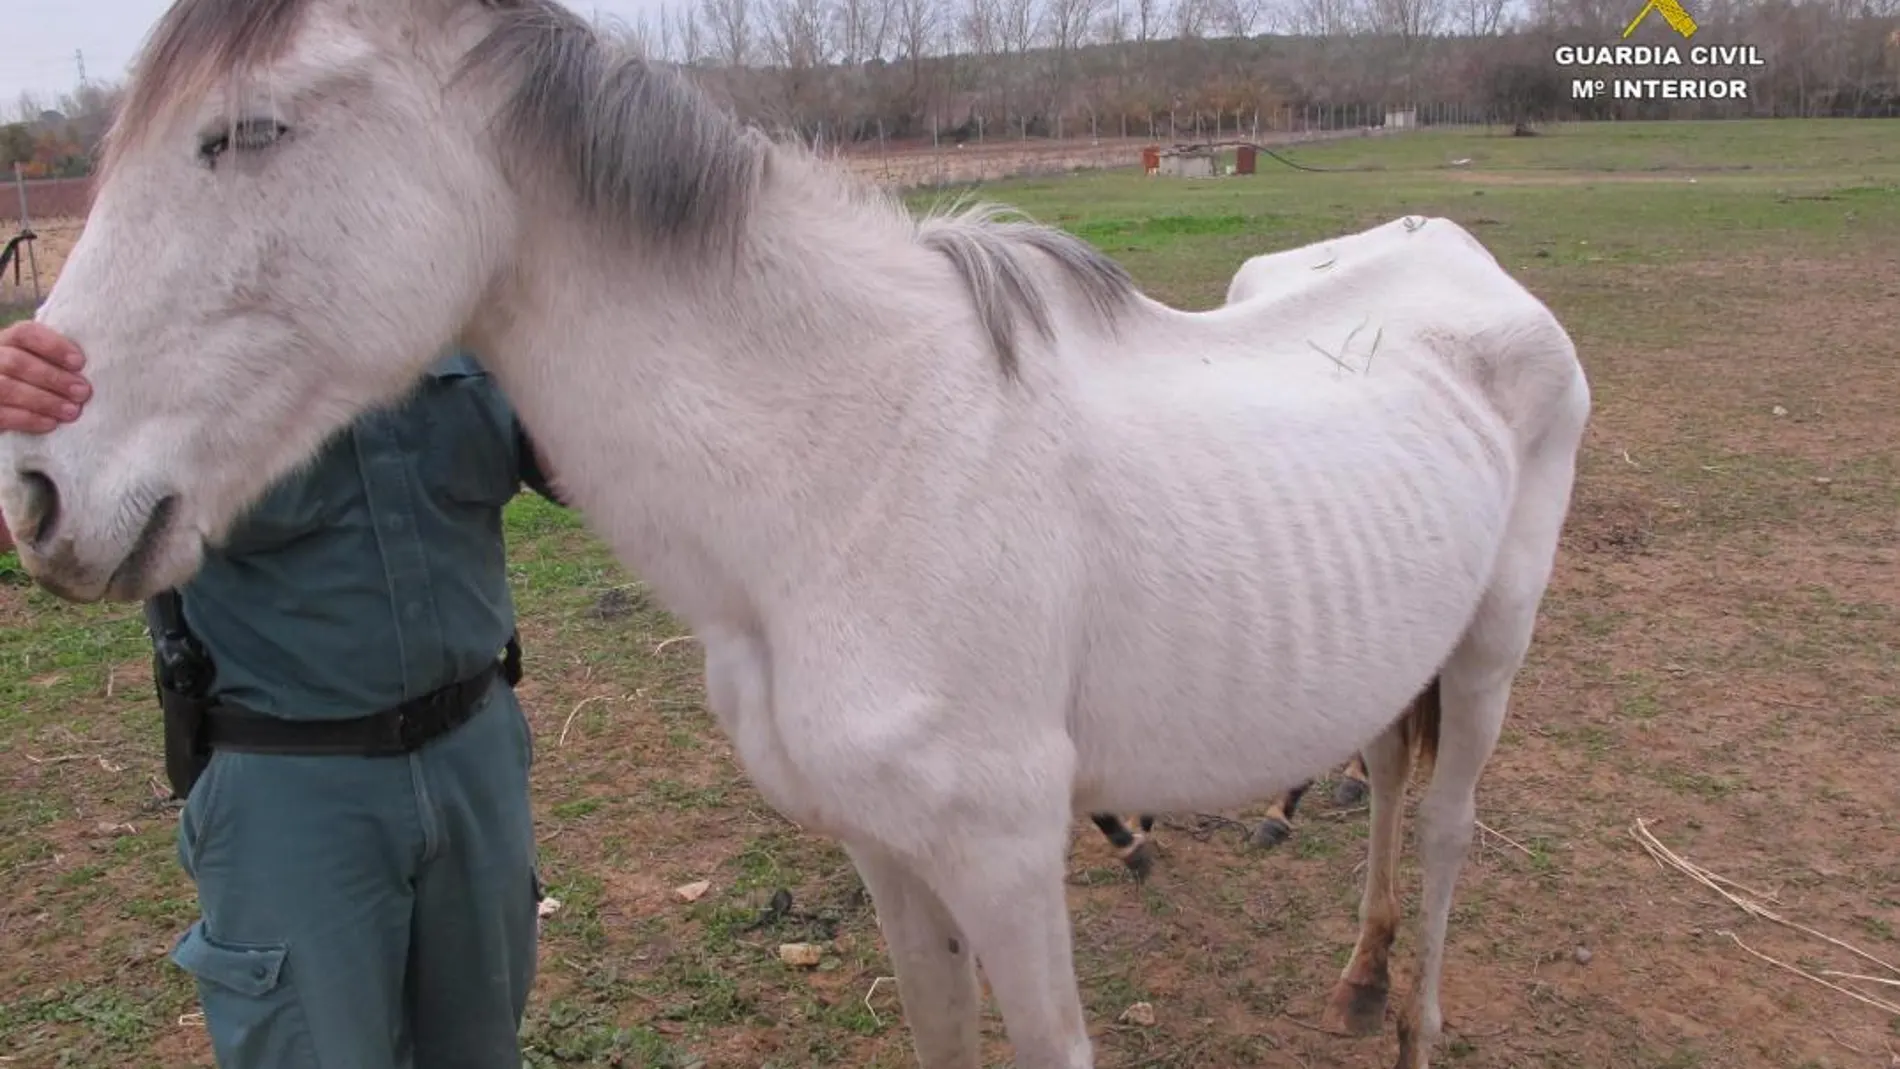 La Guardia Civil localizó este caballo en situación de abandono